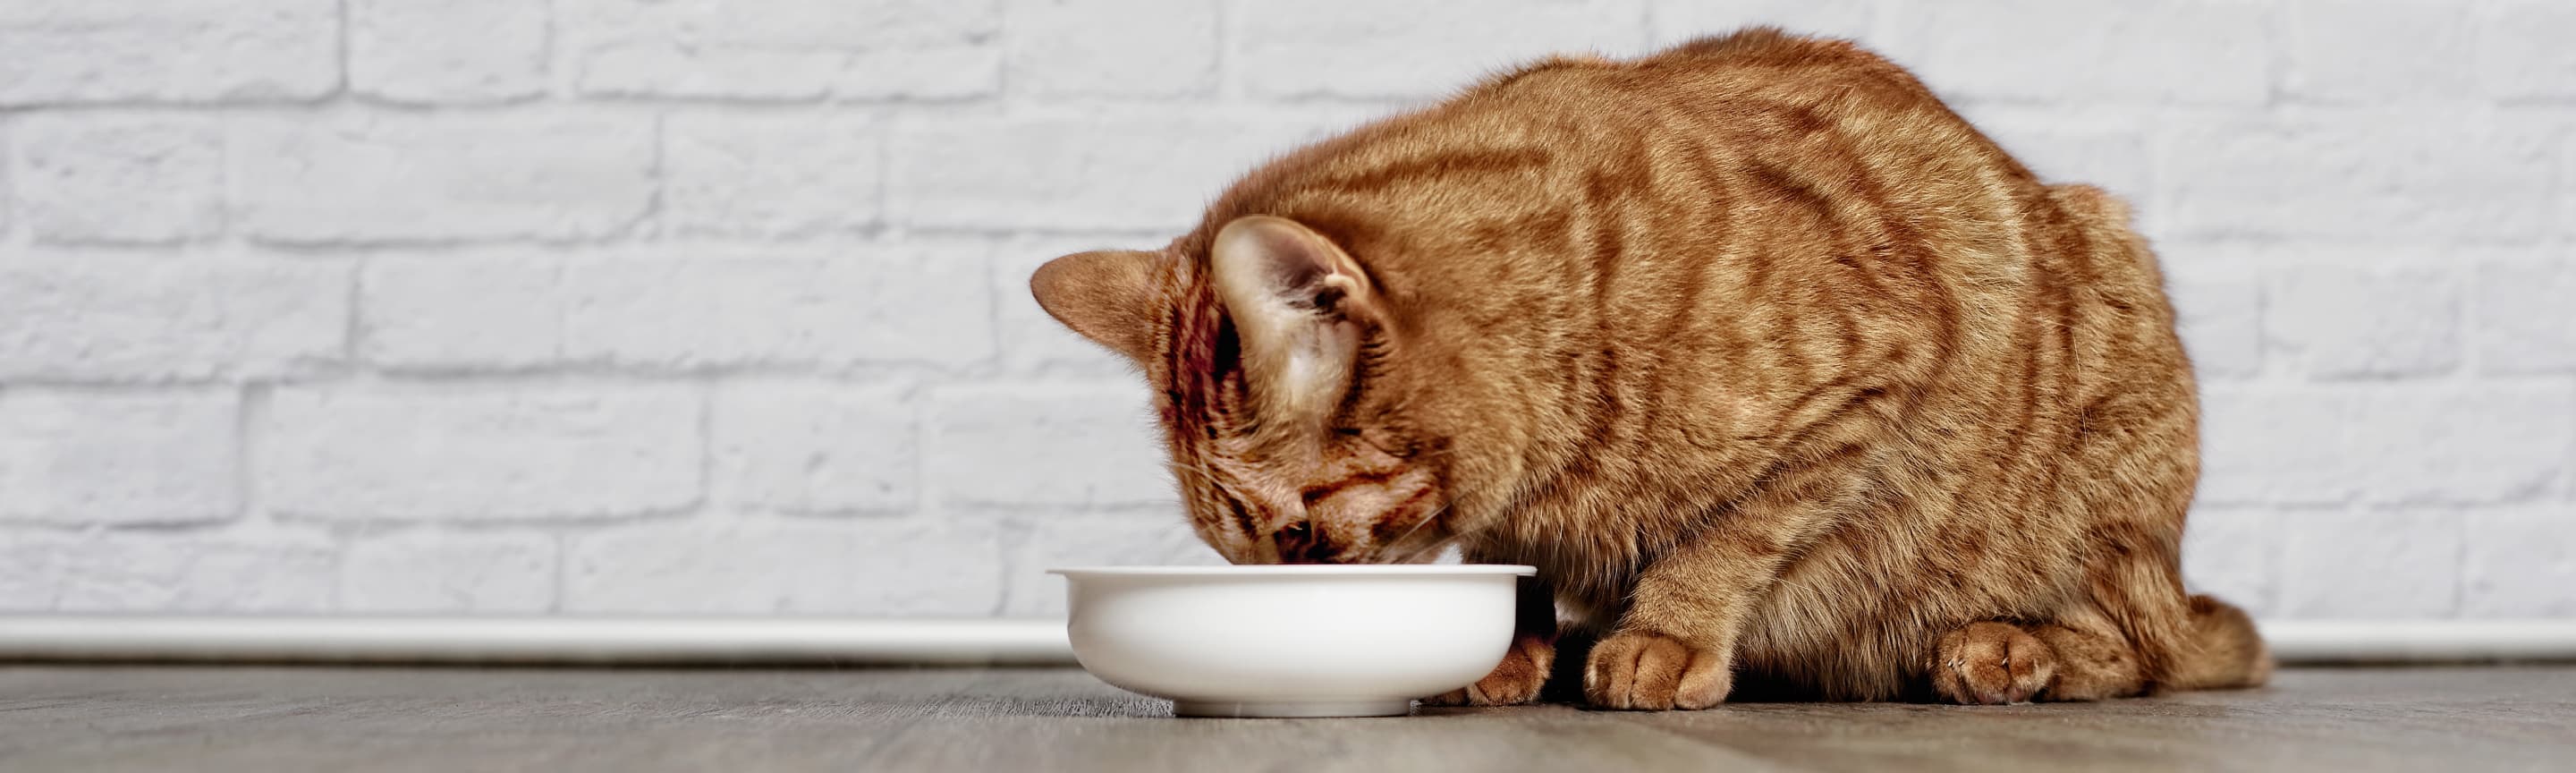 Кошка пьет мало воды, почему? Узнайте, как сделать воду вашей кошки более привлекательной!